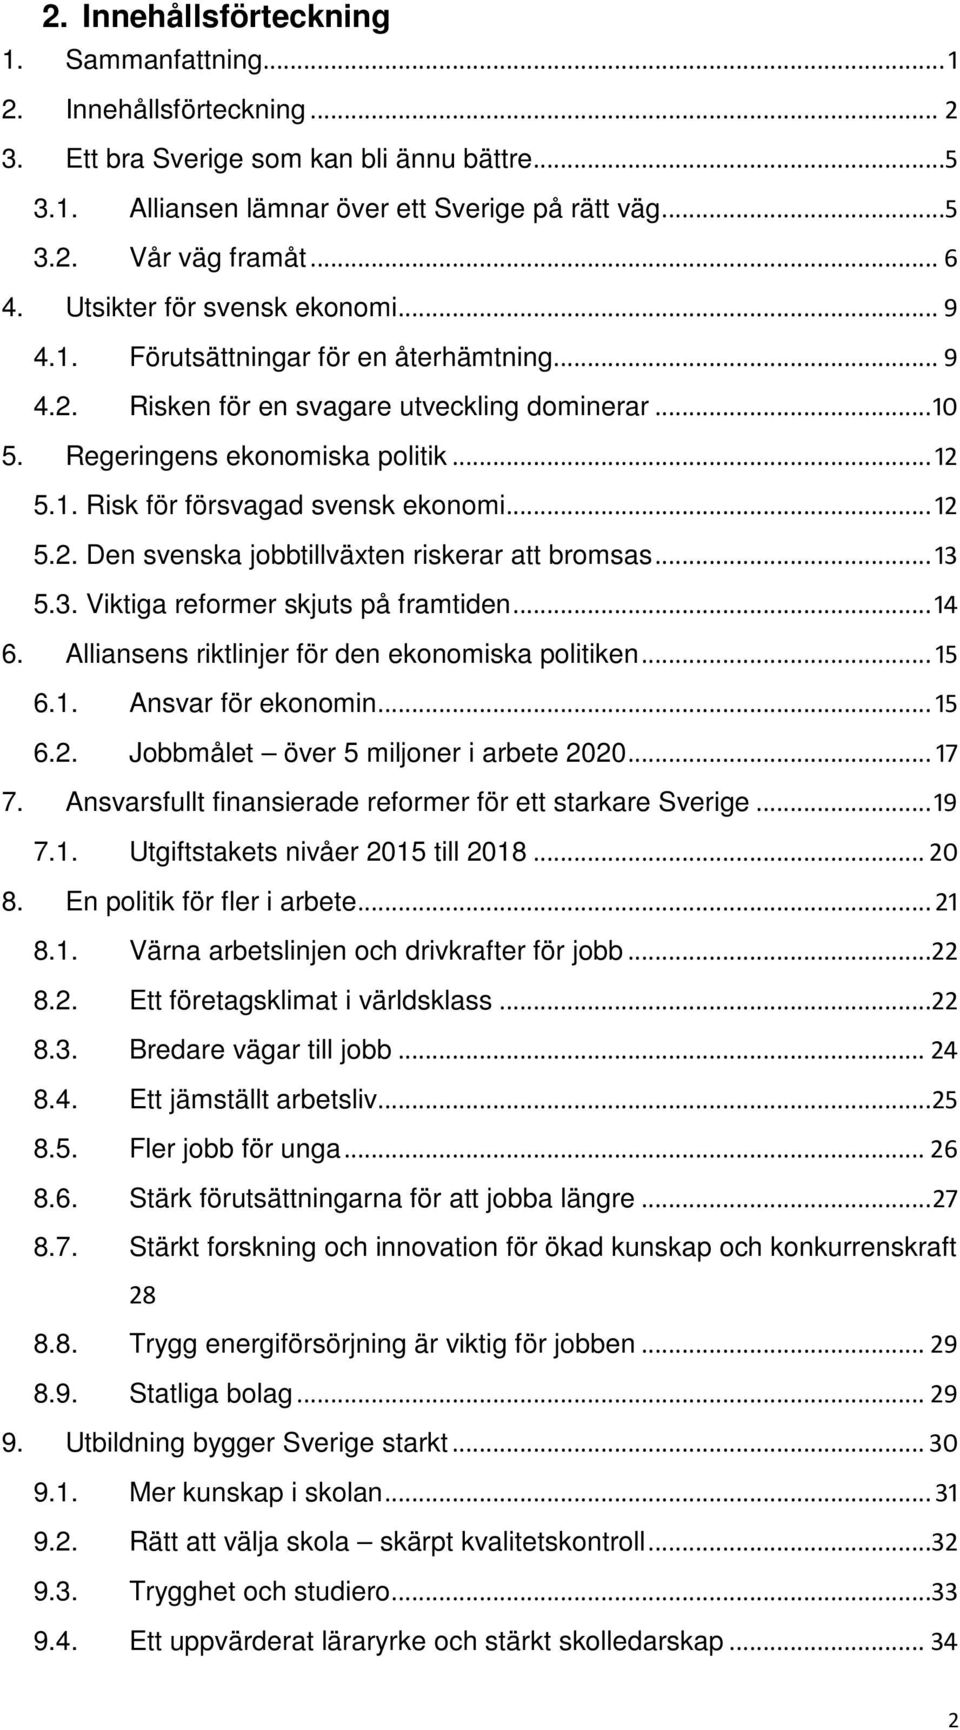 .. 12 5.2. Den svenska jobbtillväxten riskerar att bromsas... 13 5.3. Viktiga reformer skjuts på framtiden... 14 6. Alliansens riktlinjer för den ekonomiska politiken... 15 6.1. Ansvar för ekonomin.